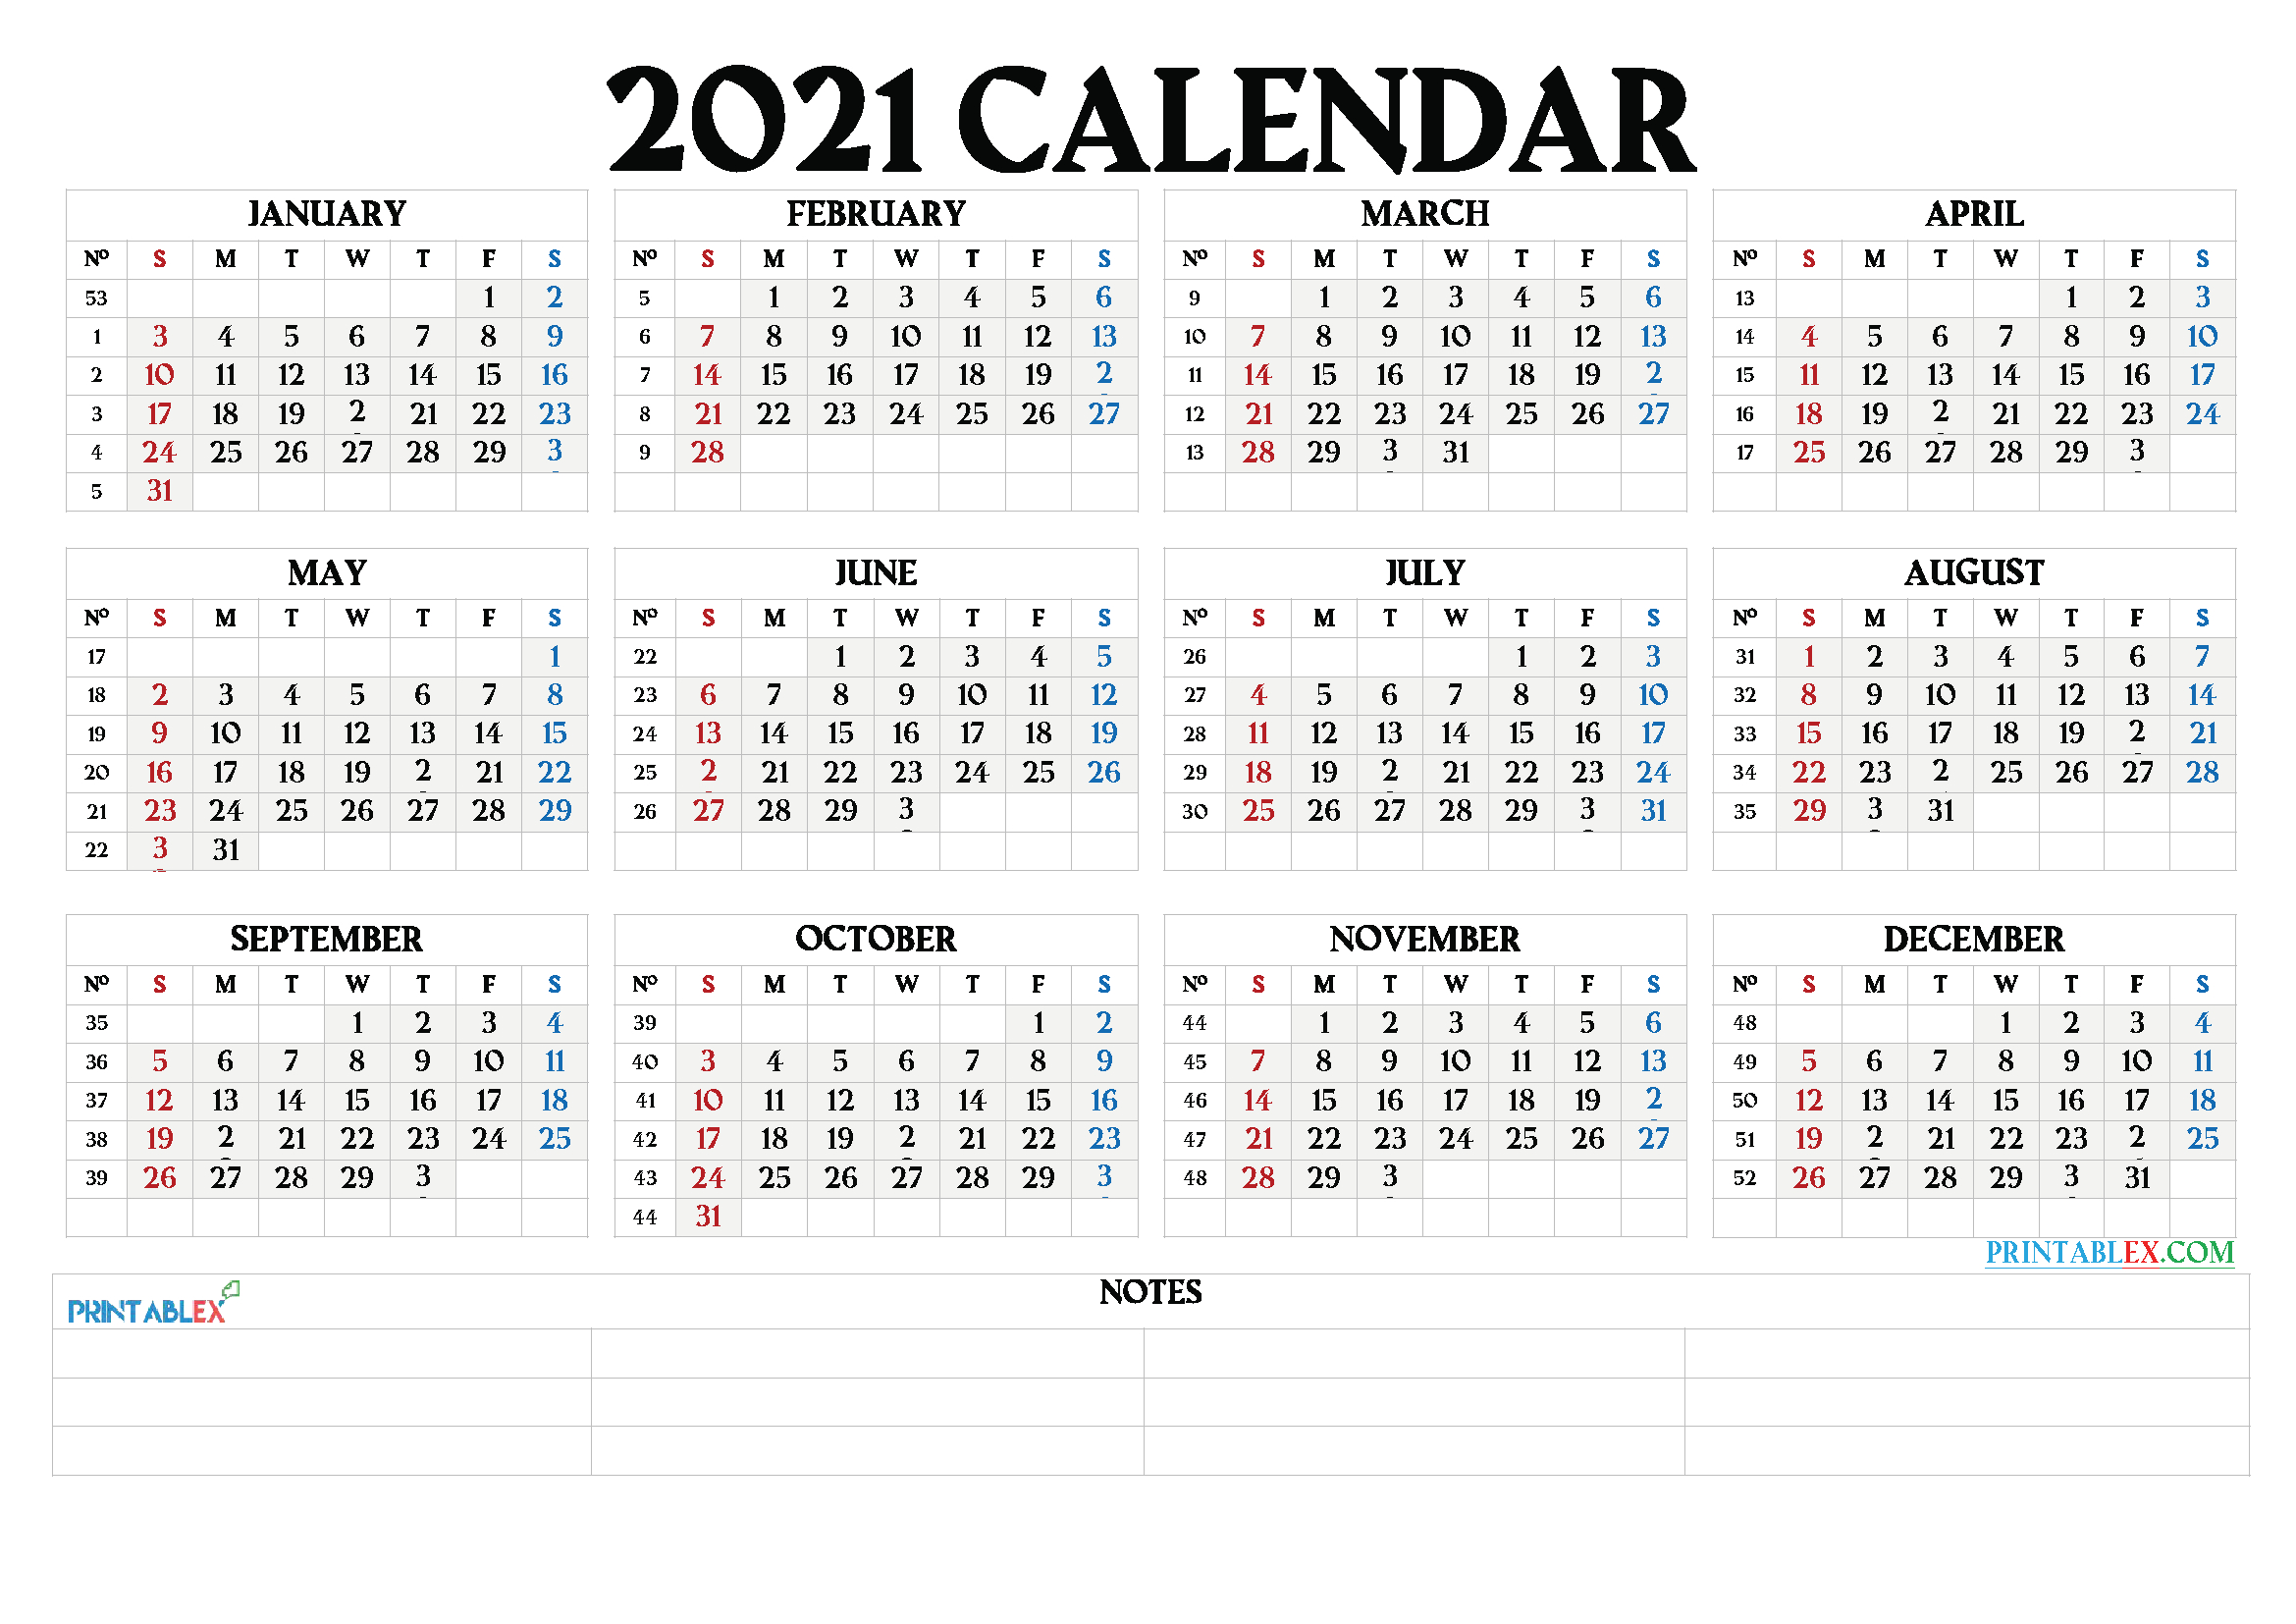 Printable 2021 Calendar By Month - 21Ytw66-Monyj Yp Page 2021 Calendar Print